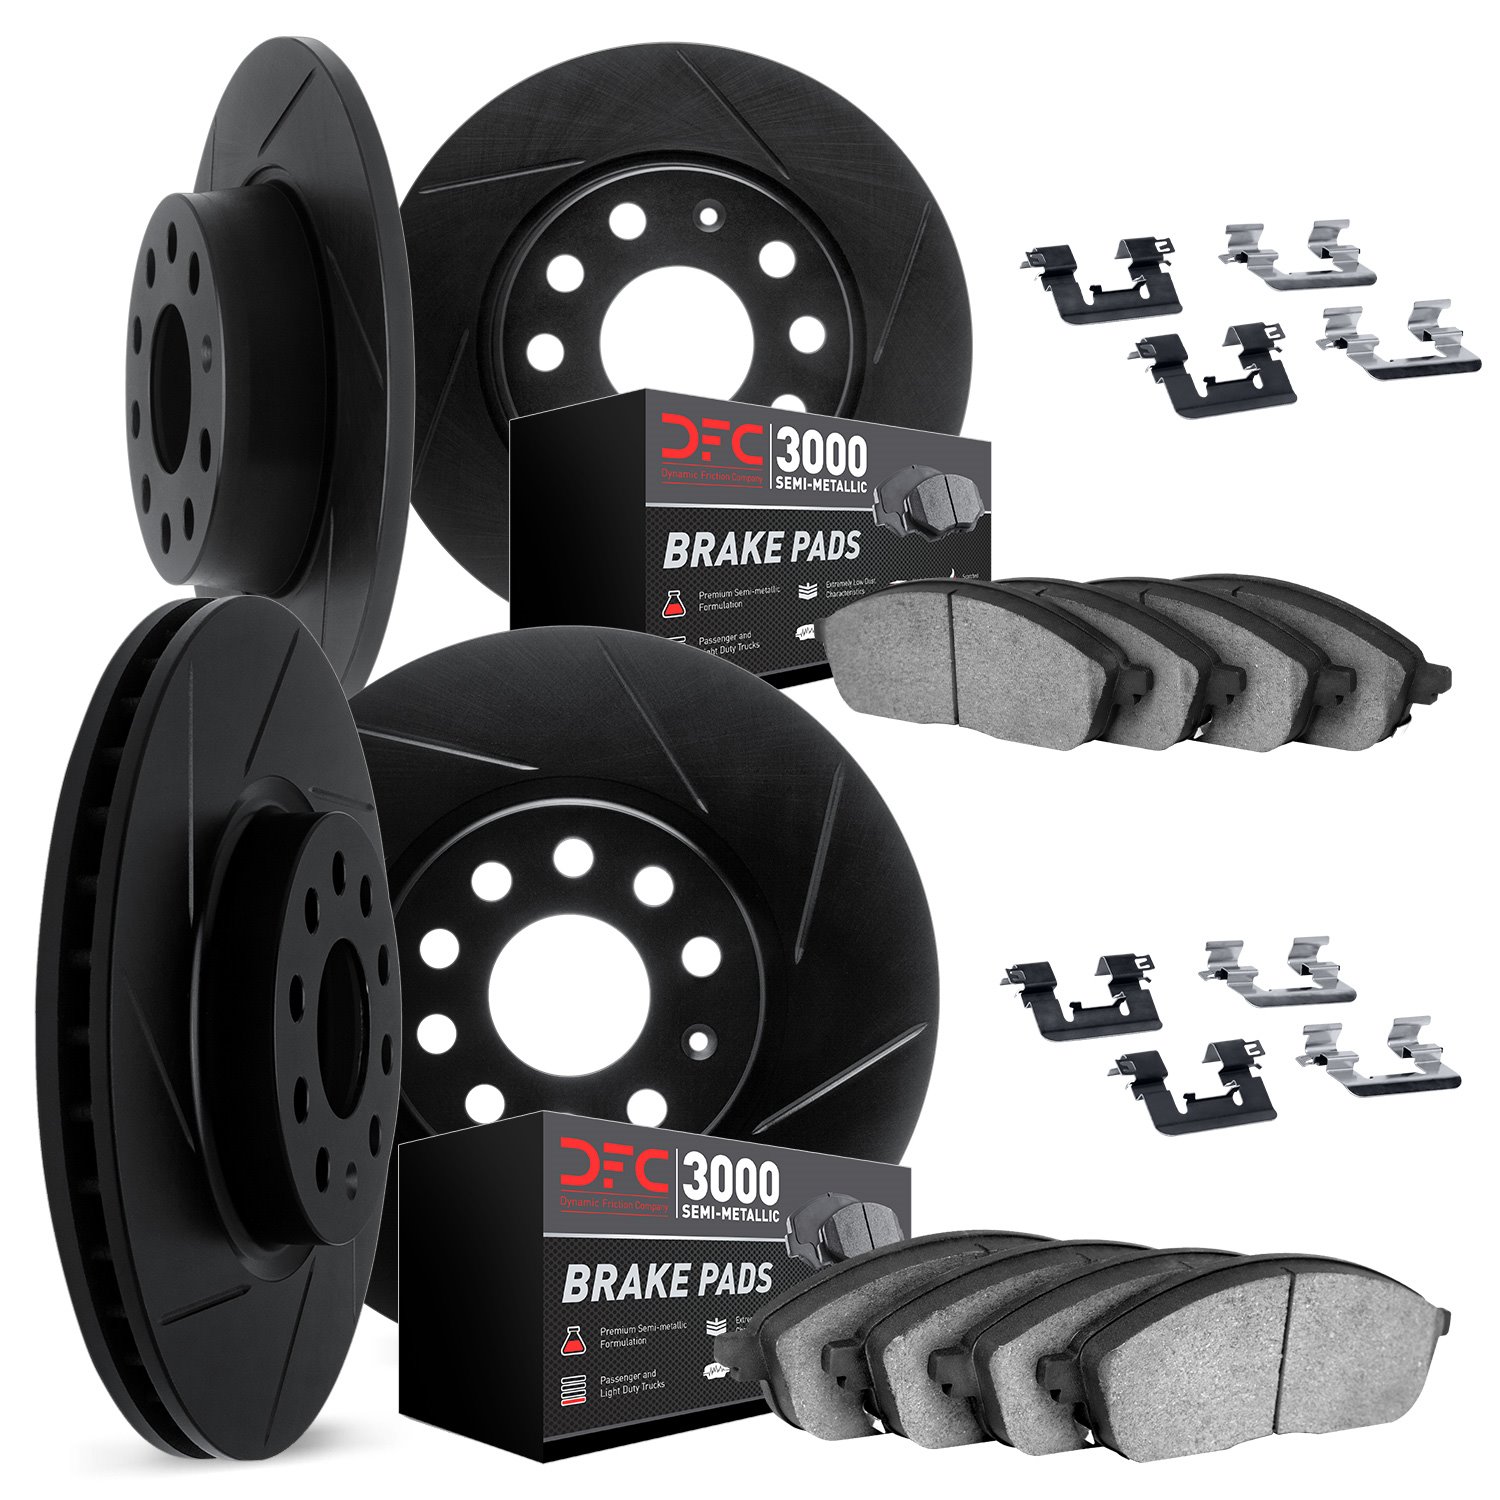 3114-63131 Slotted Brake Rotors with 3000-Series Semi-Metallic Brake Pads Kit & Hardware [Black], 2012-2018 Mercedes-Benz, Posit